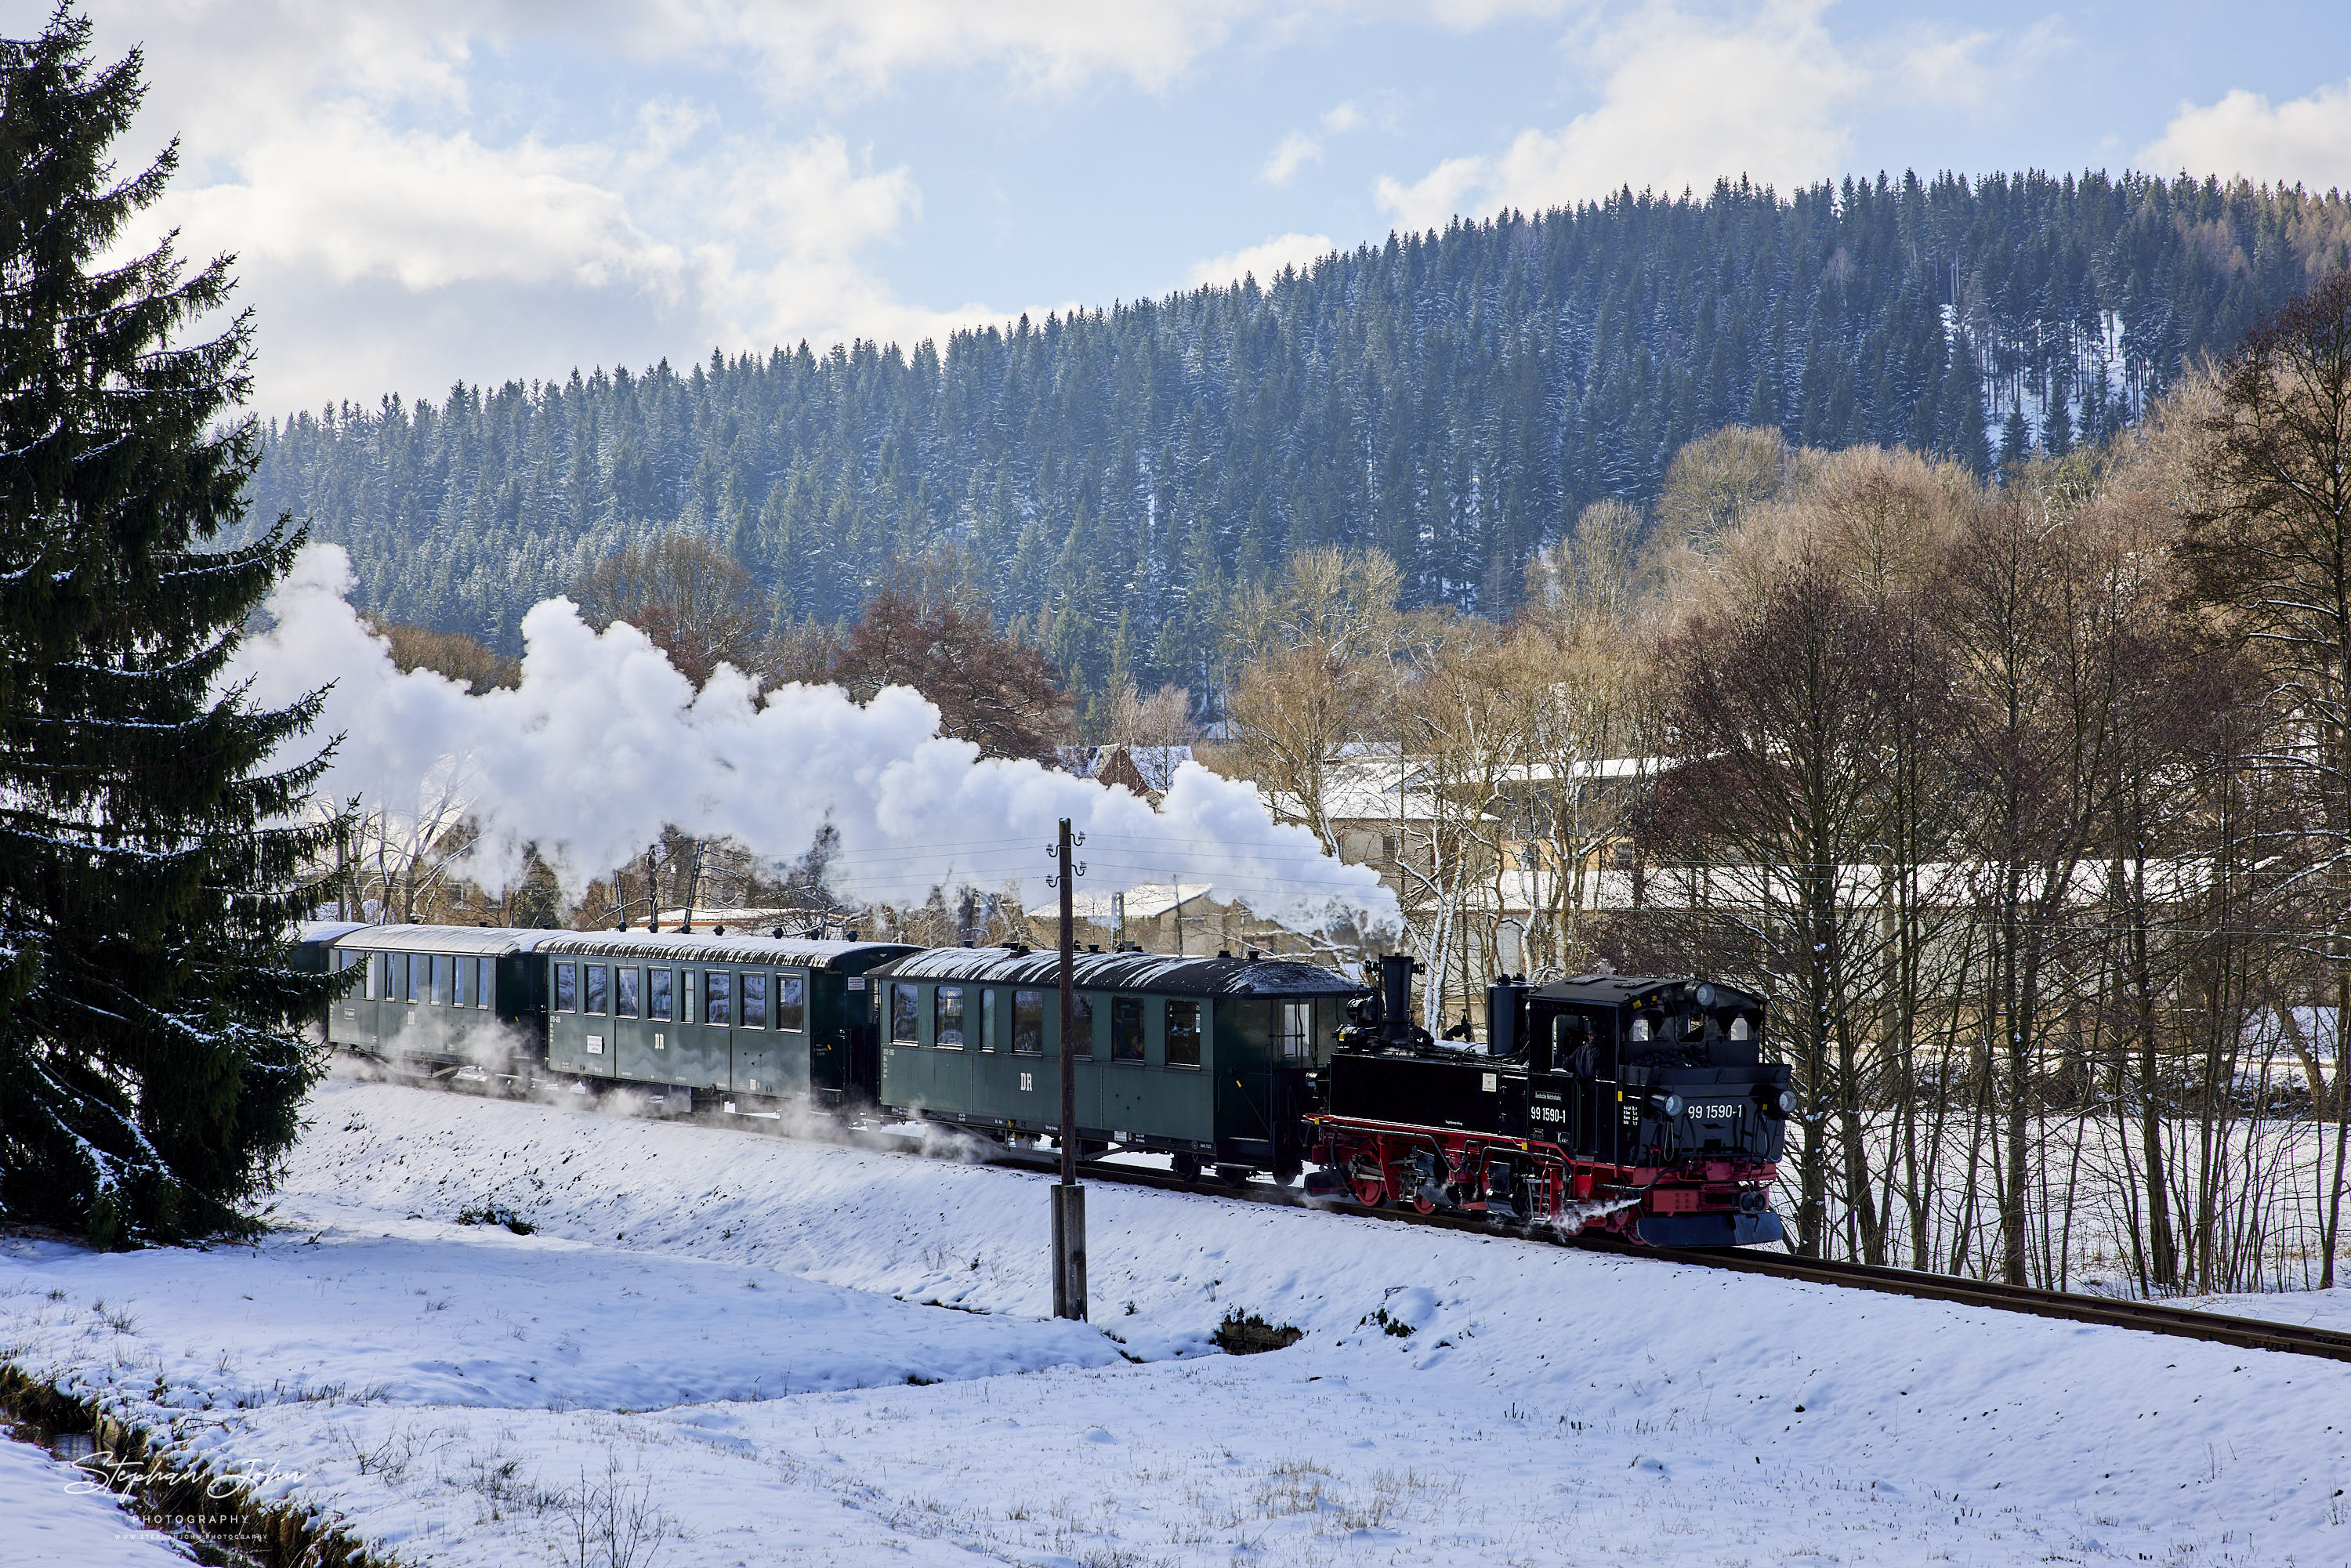 Zug 14110 mit Lok 99 1590-1 als erster Zug des Tages nach Steinbach. Hier befindet sich der Zug kurz vor dem Haltepunkt Forellenhof